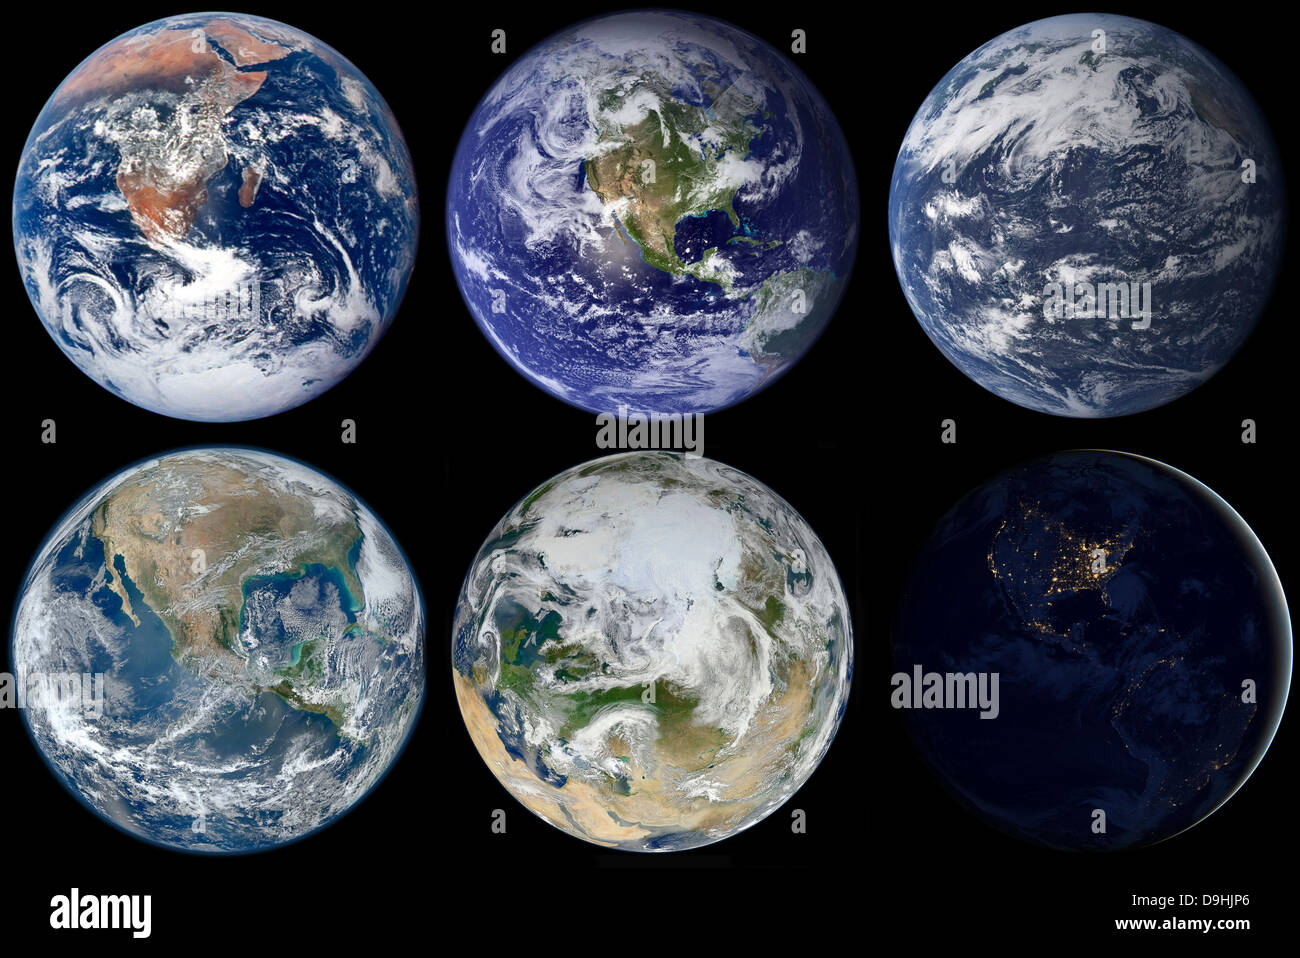 Comparaison de l'image iconique de vues de la planète Terre. Banque D'Images